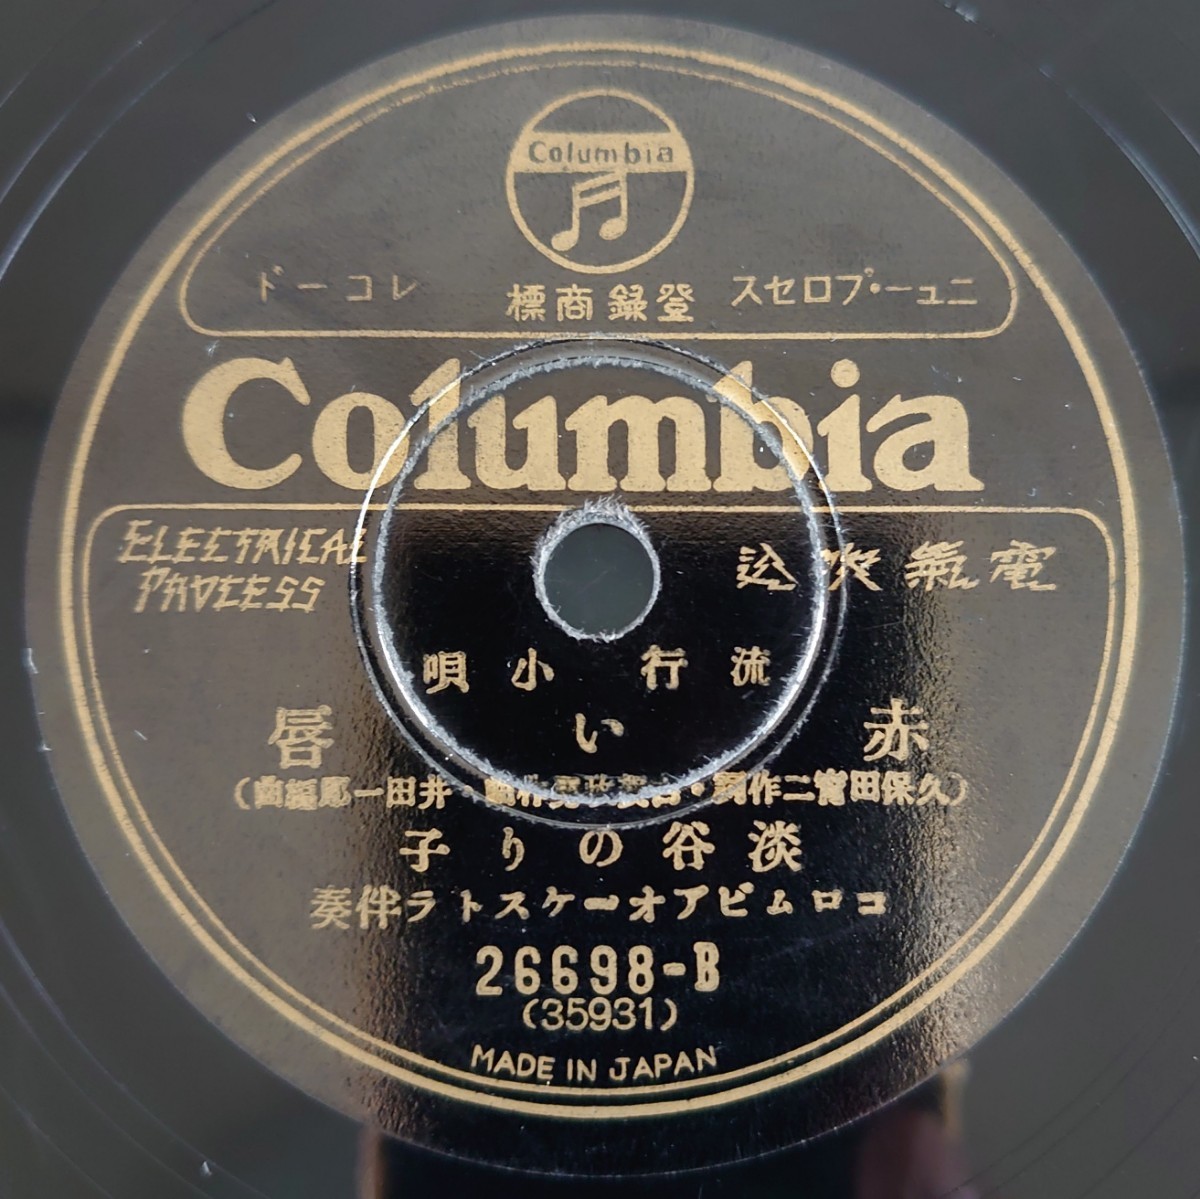 【SP盤レコード】Columbia歌謠曲・流行小唄/嘆きの夜曲 關種子/赤い唇 淡谷のり子/SPレコード_画像5